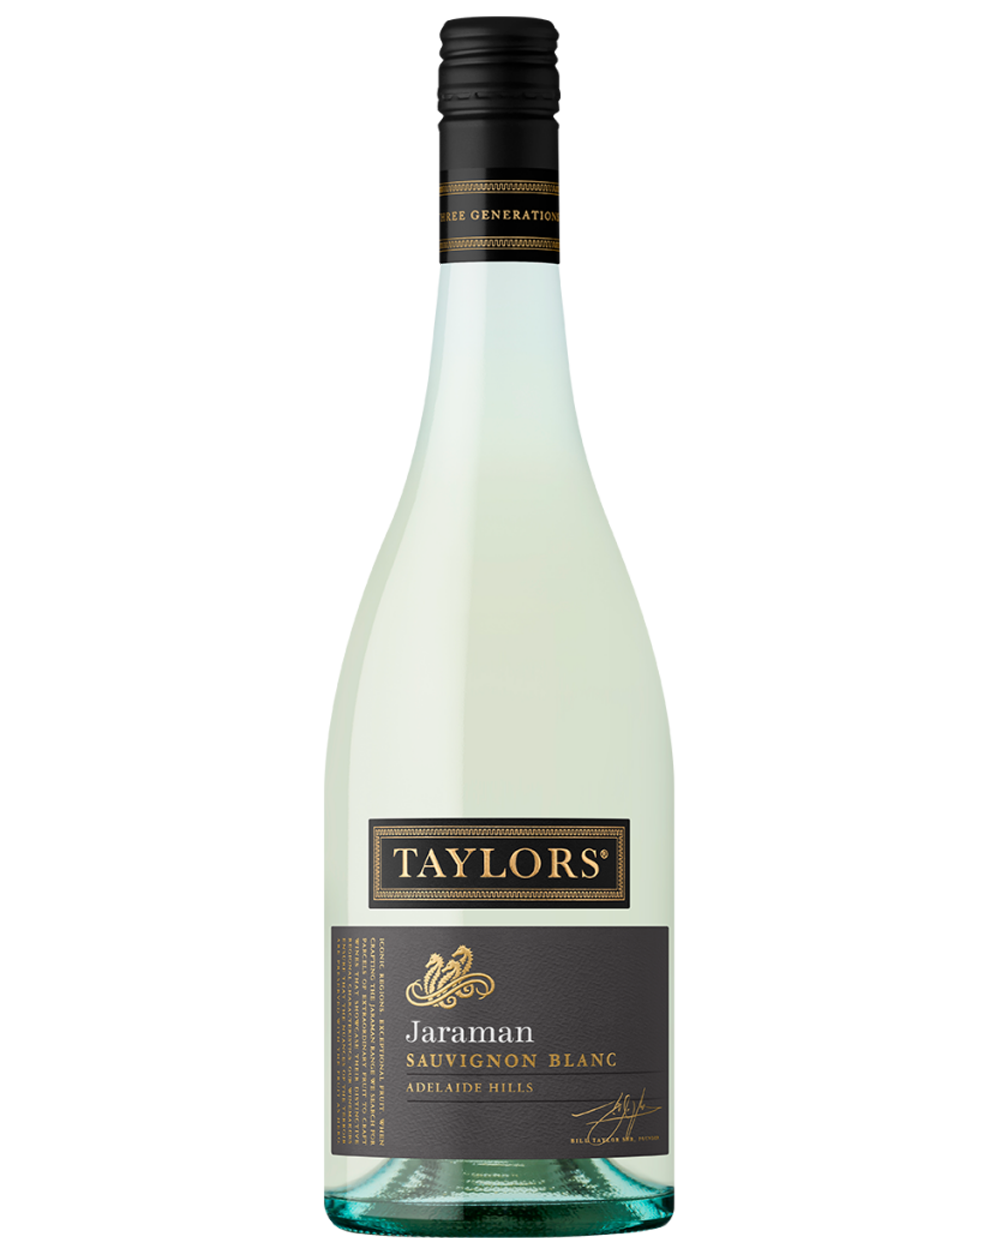 Taylors Jaraman Sauvignon Blanc